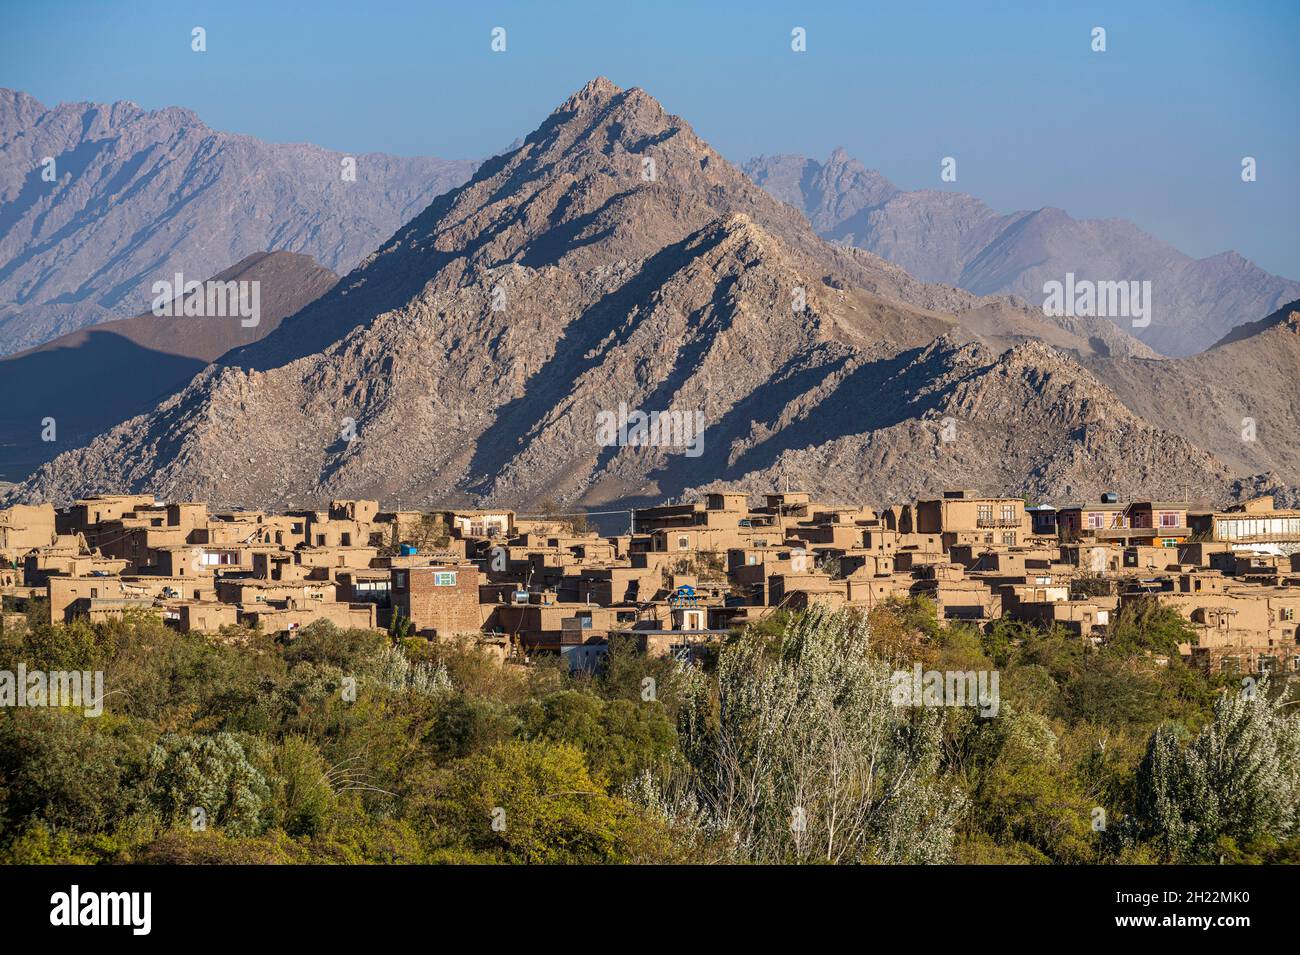 Villaggio di montagna nella valle di Panjshir, Afghanistan Foto Stock